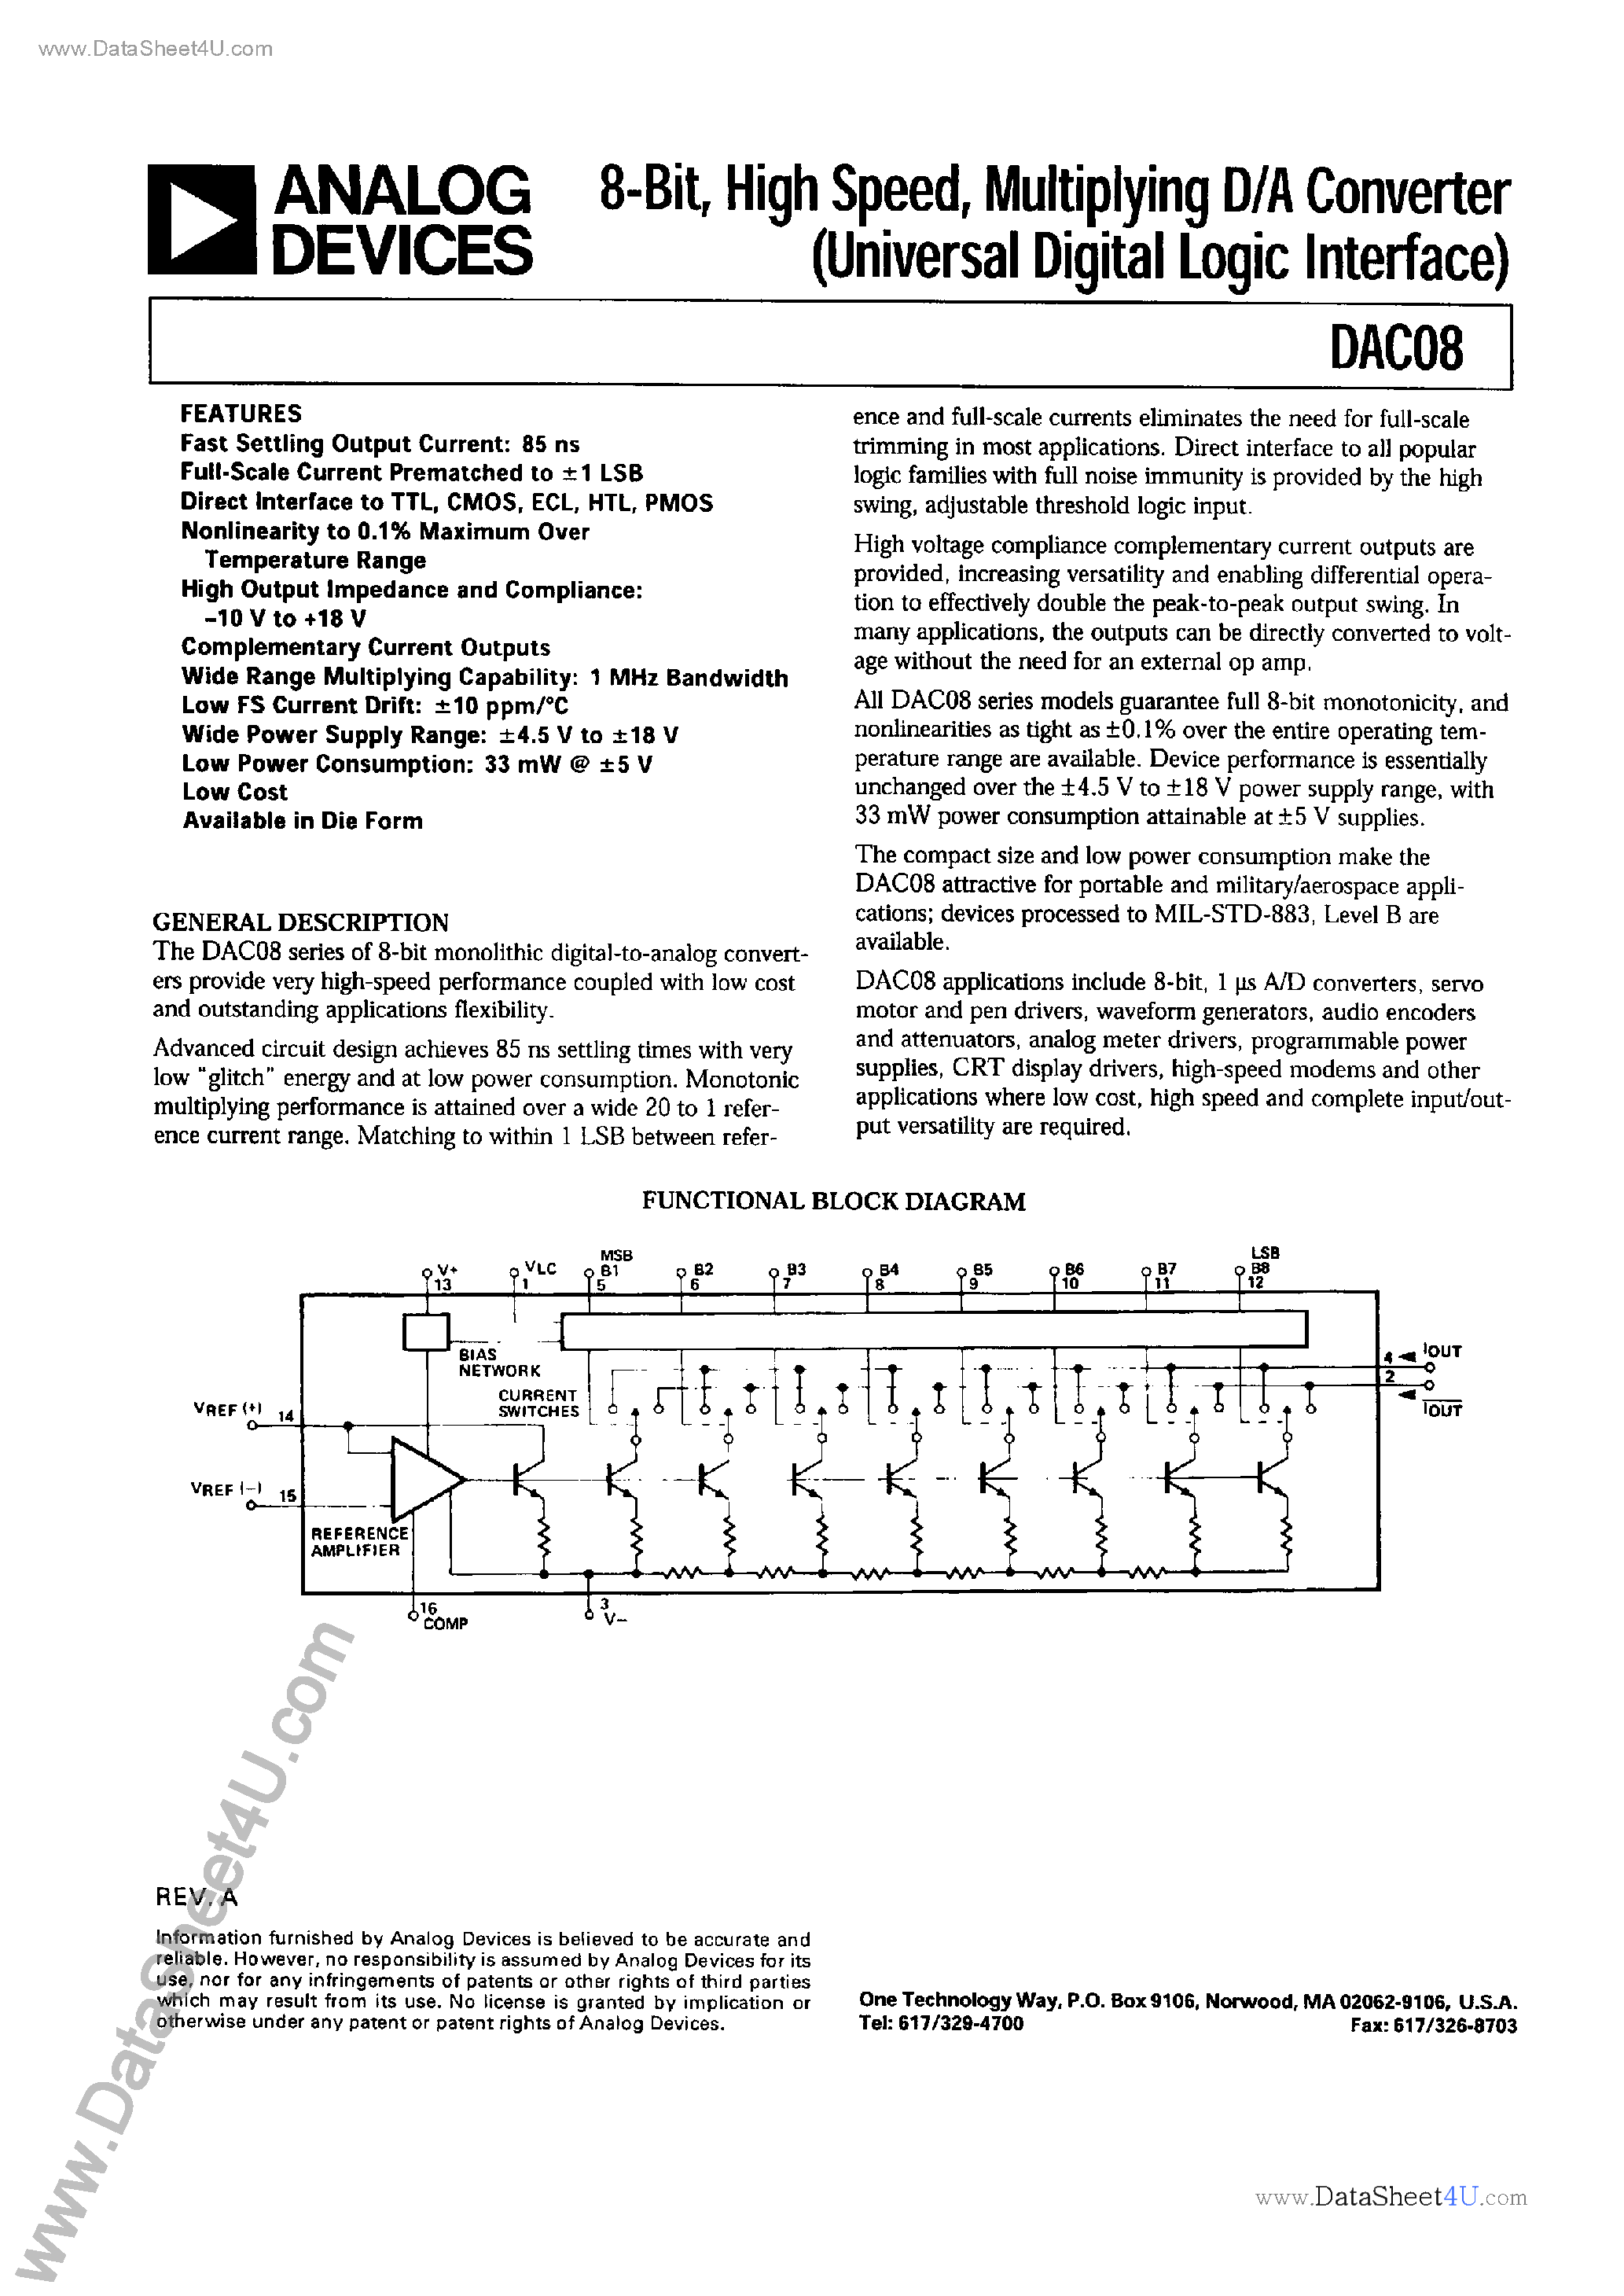 Datasheet ADDAC-08 - 8-Bit High Speed Multiplying D/A Converter page 1